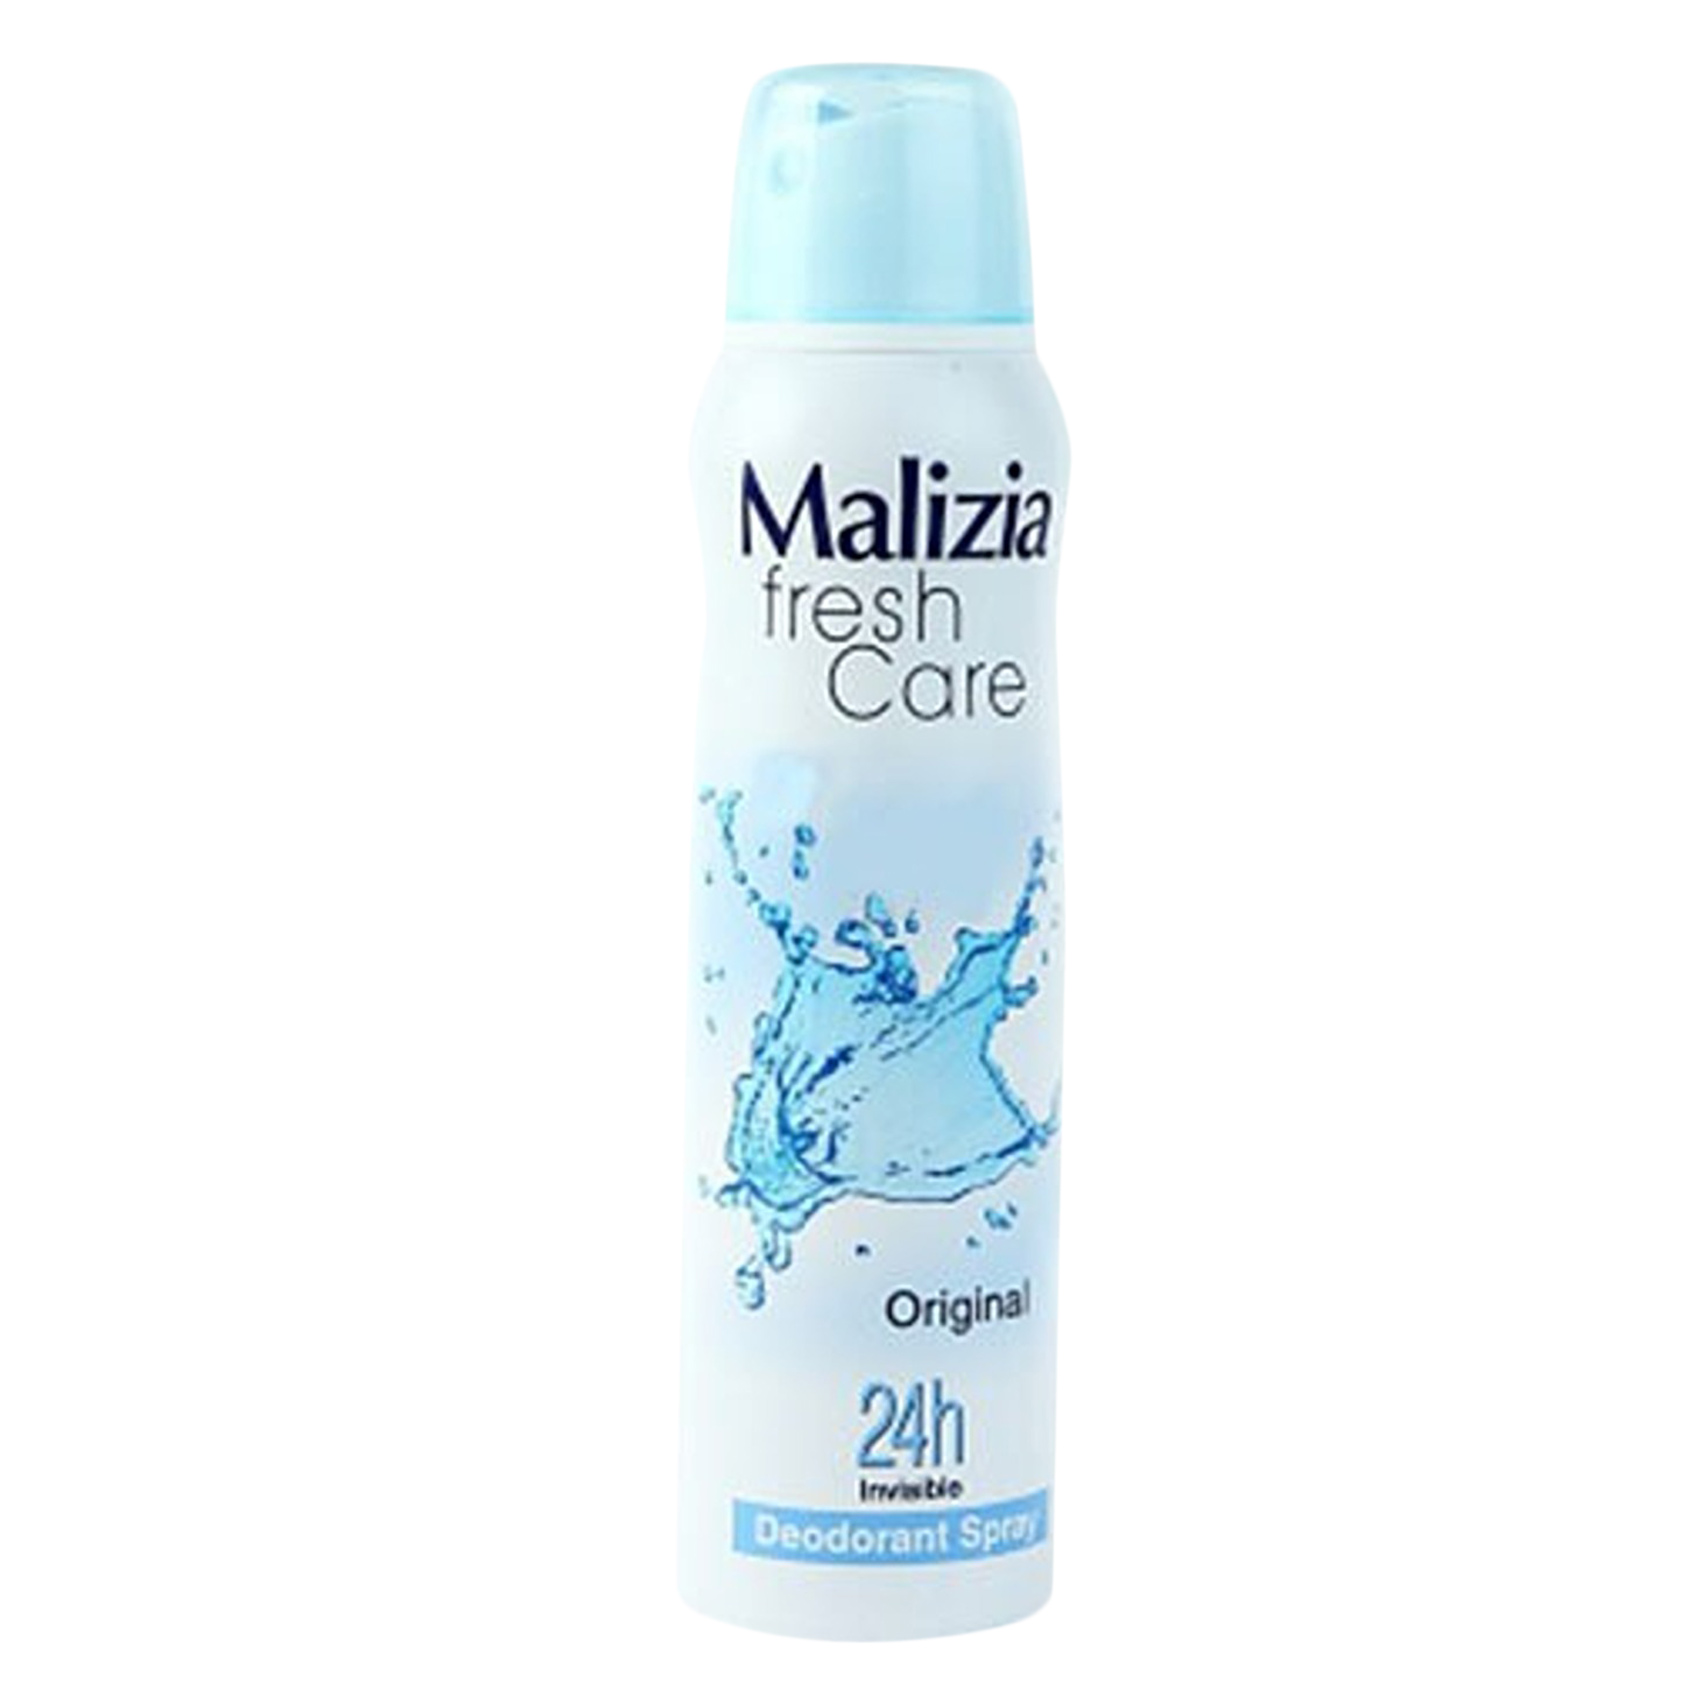 Malizia Fresh Care Original 24H Invisible Deodorant Spray 150ML